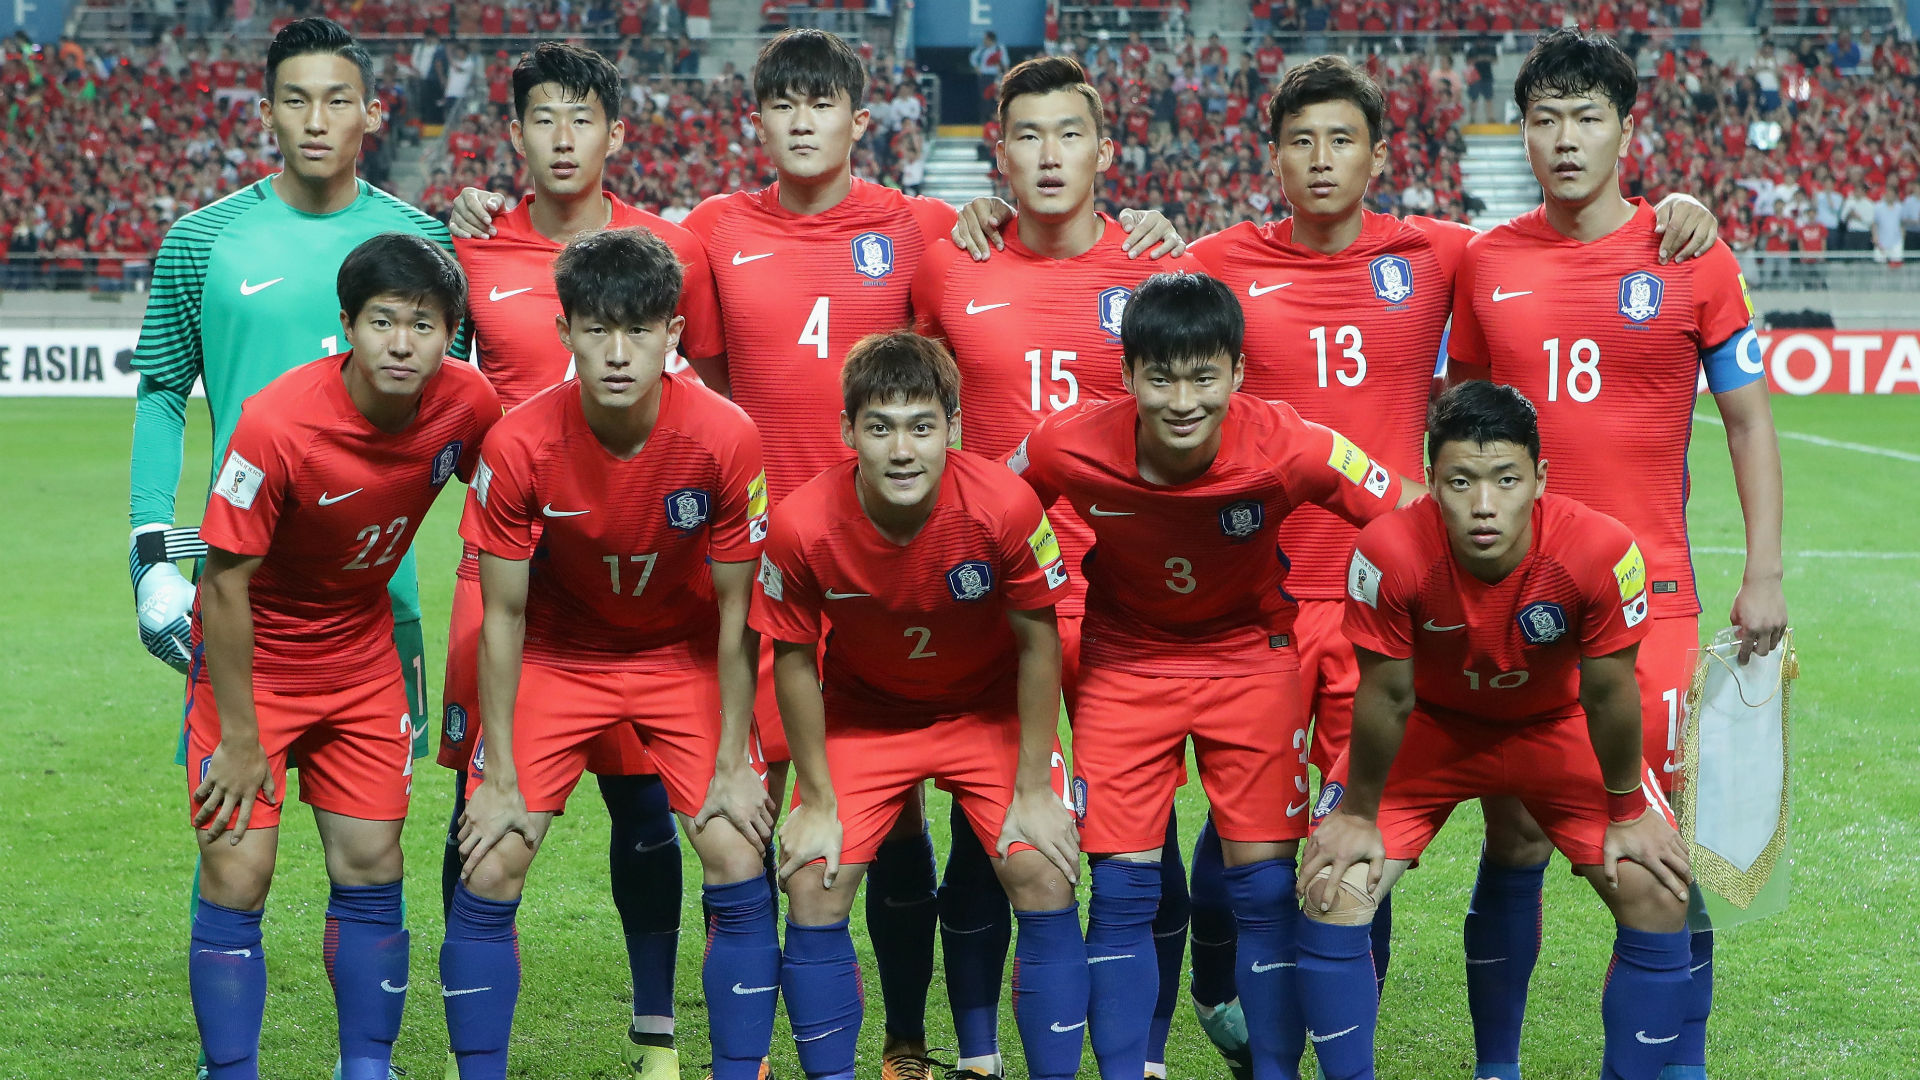 韓国代表メンバーが発表 Jリーガー9人を含むオール海外組で編成 Goal Com